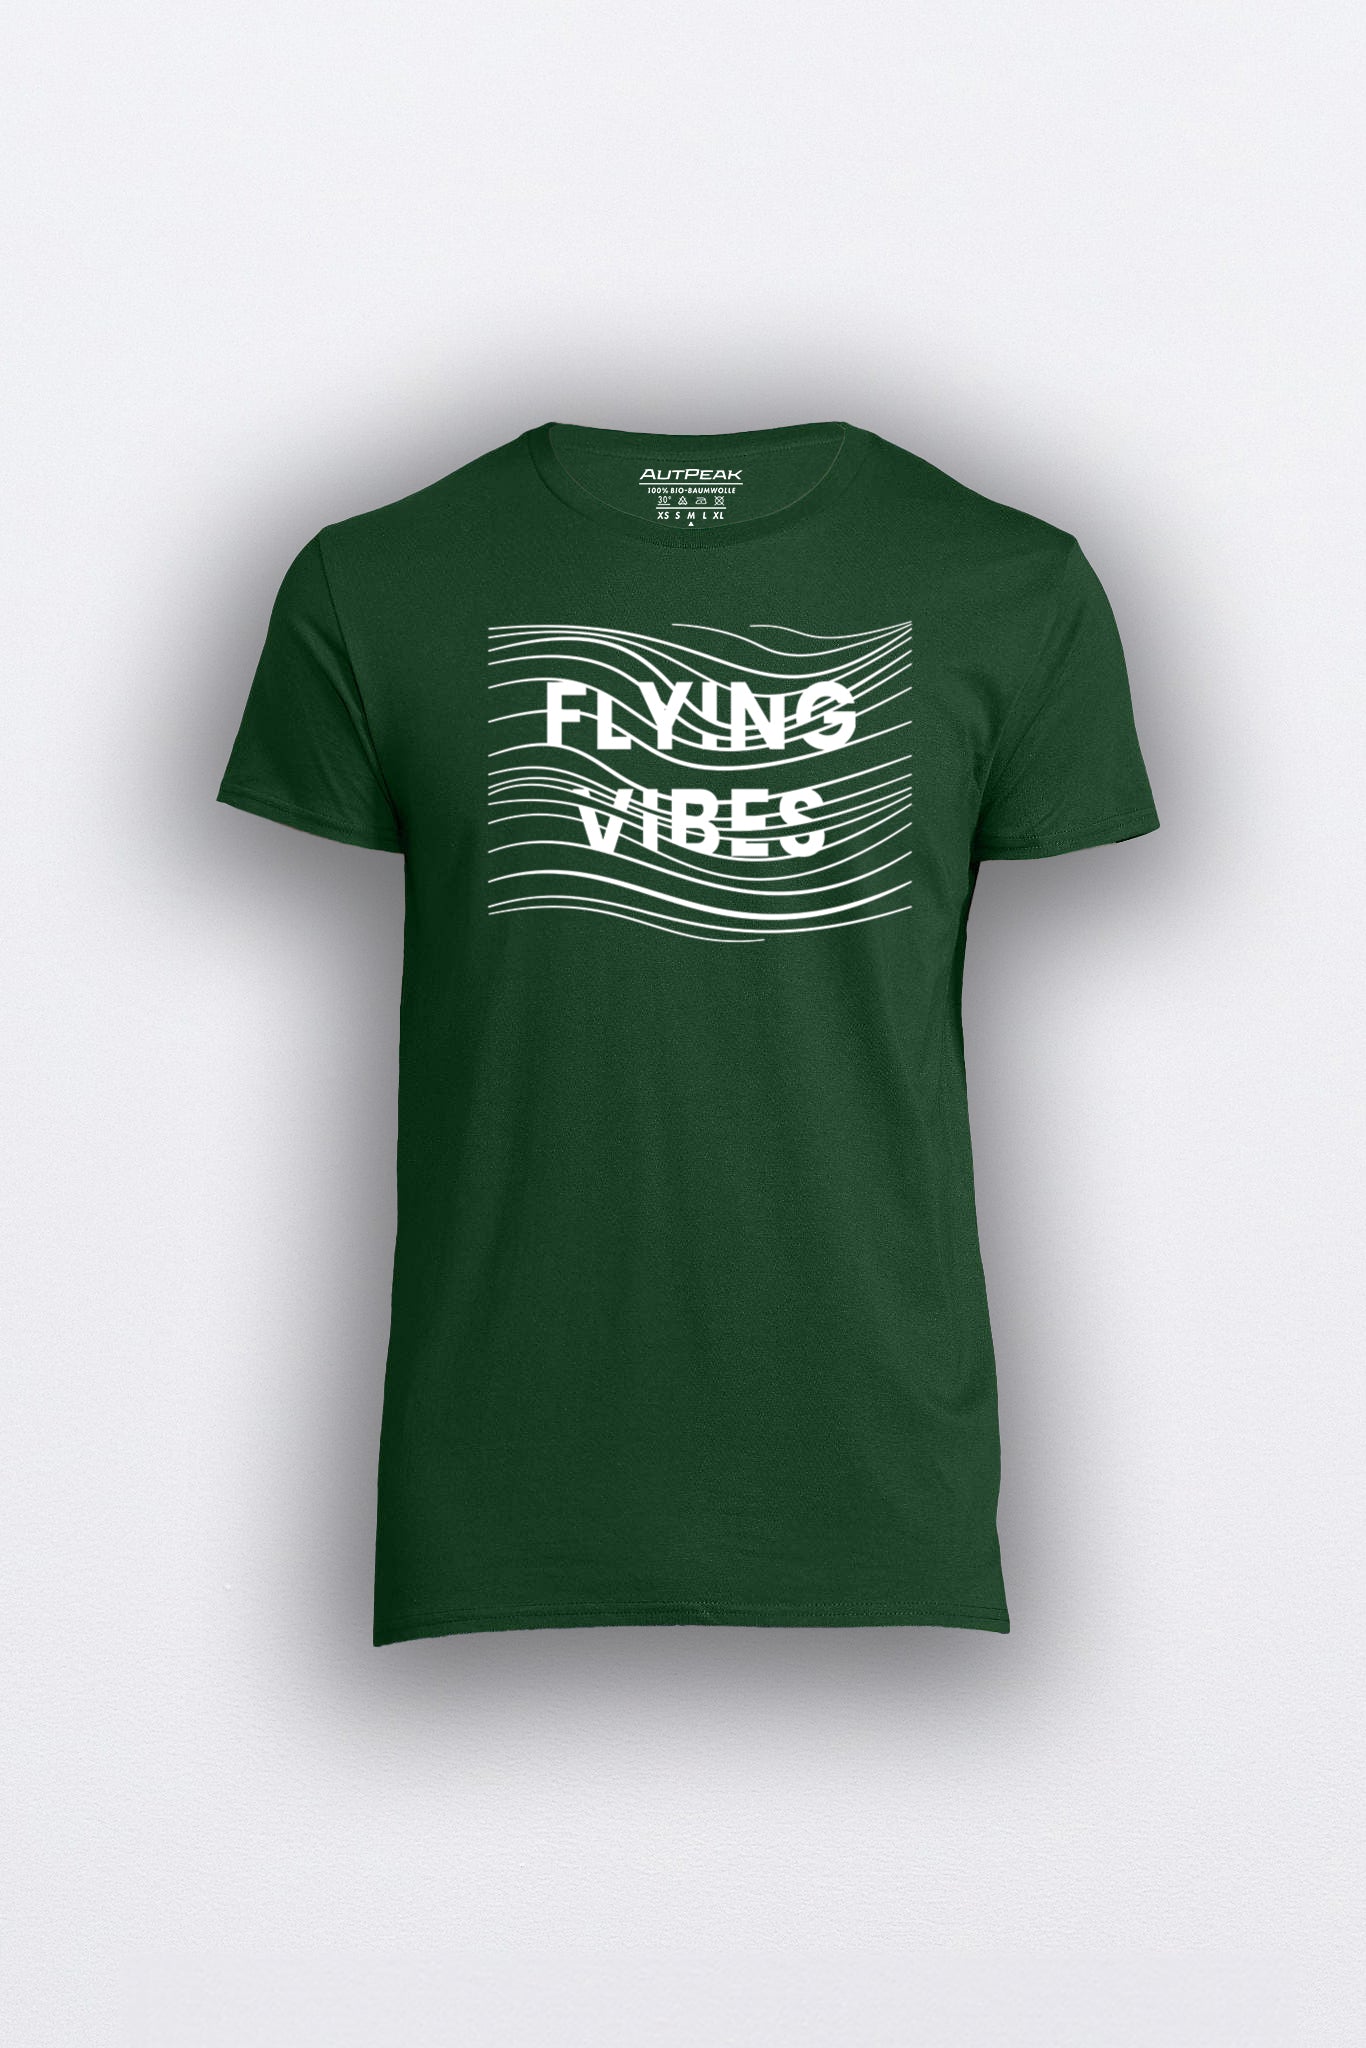 "FLYING VIBES" ORGANIC T-SHIRT